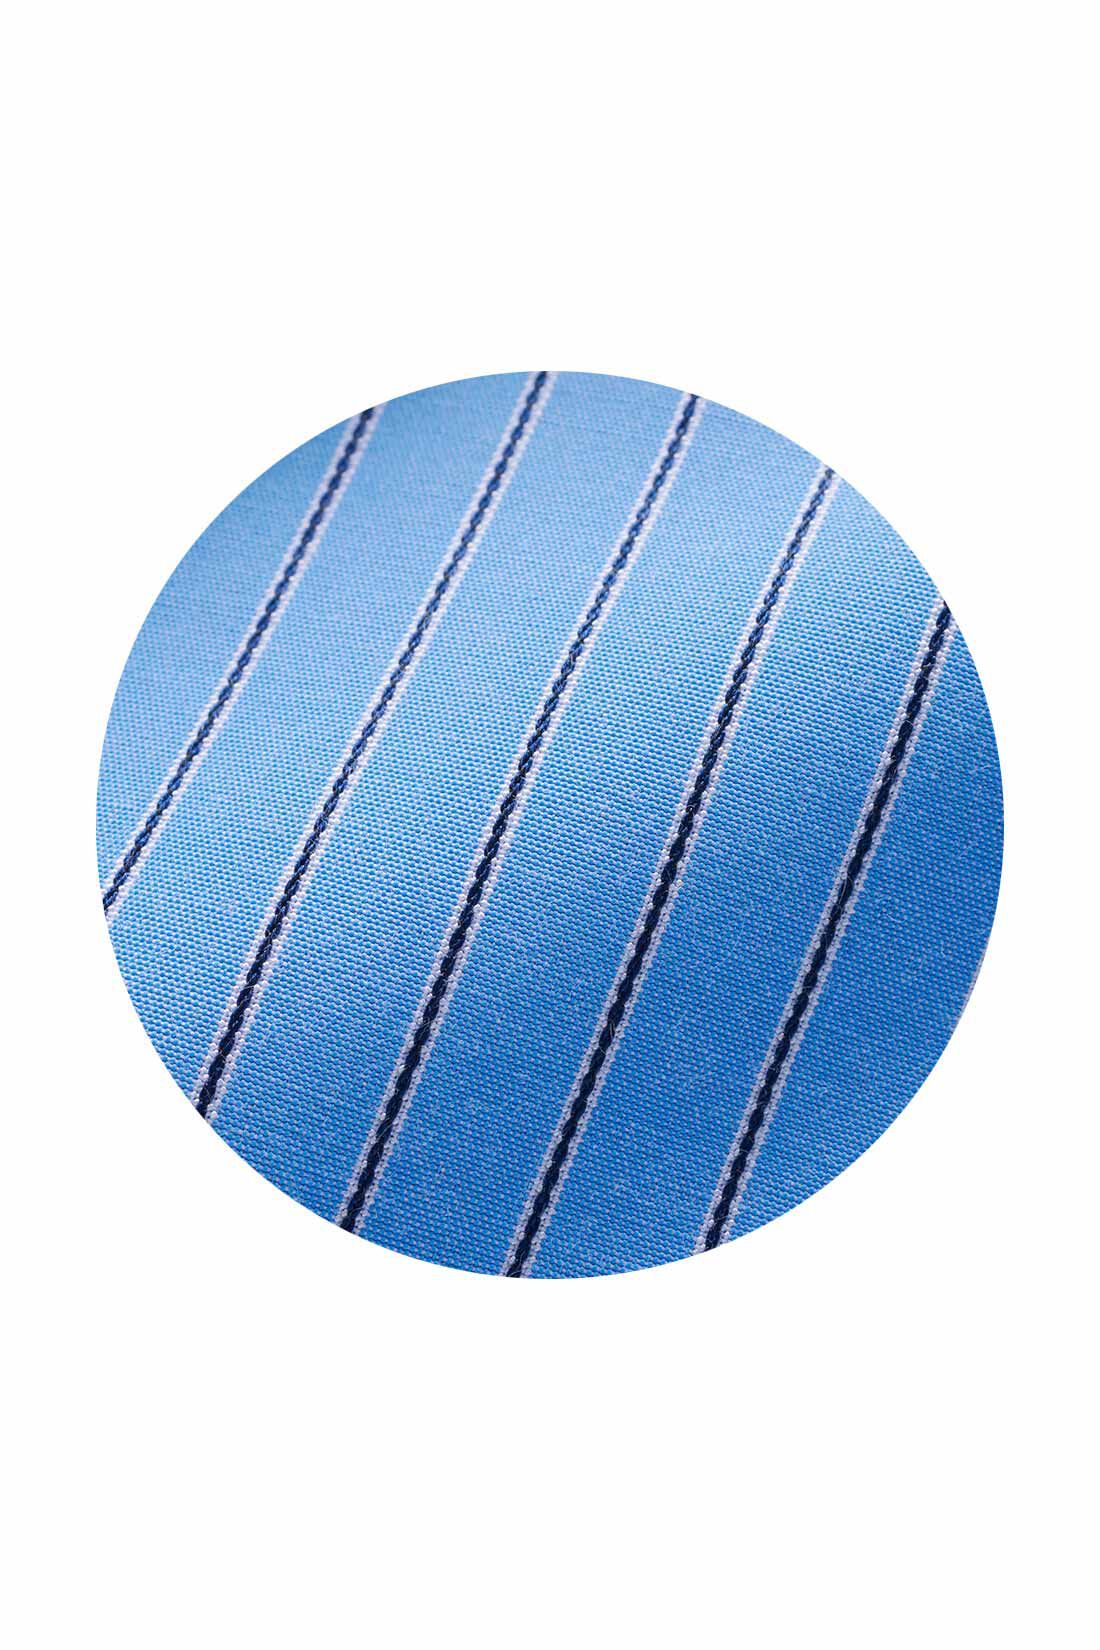 シロップ．|シロップ． リブがポイントさらり布はくのさわやかストライプワンピース〈ソーダブルー〉|織りで柄を表現したソーダ味のアイスみたいなブルーのストライプ。